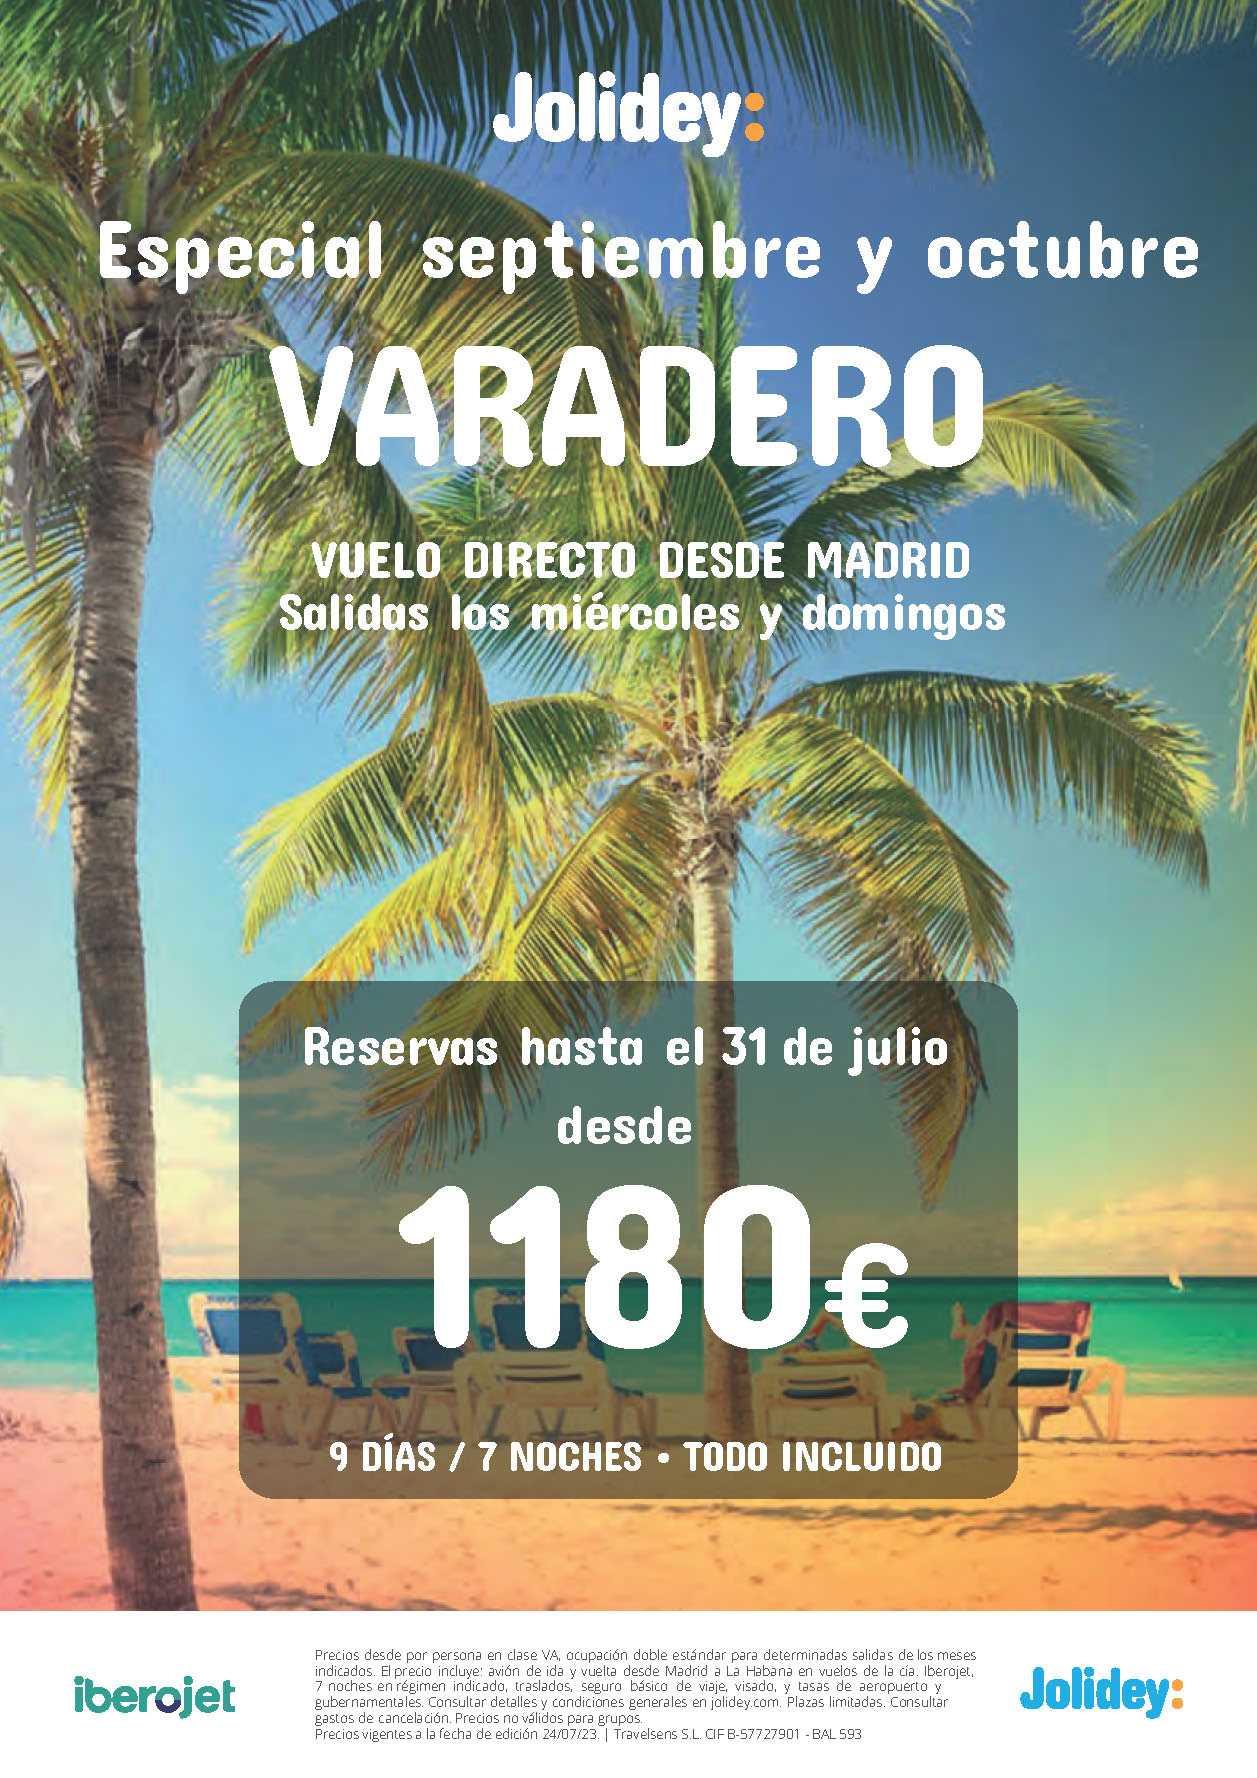 Oferta Jolidey Especial Septiembre Octubre 2023 Estancia en Varadero Cuba 9 dias Todo Incluido salidas en vuelo directo desde Madrid